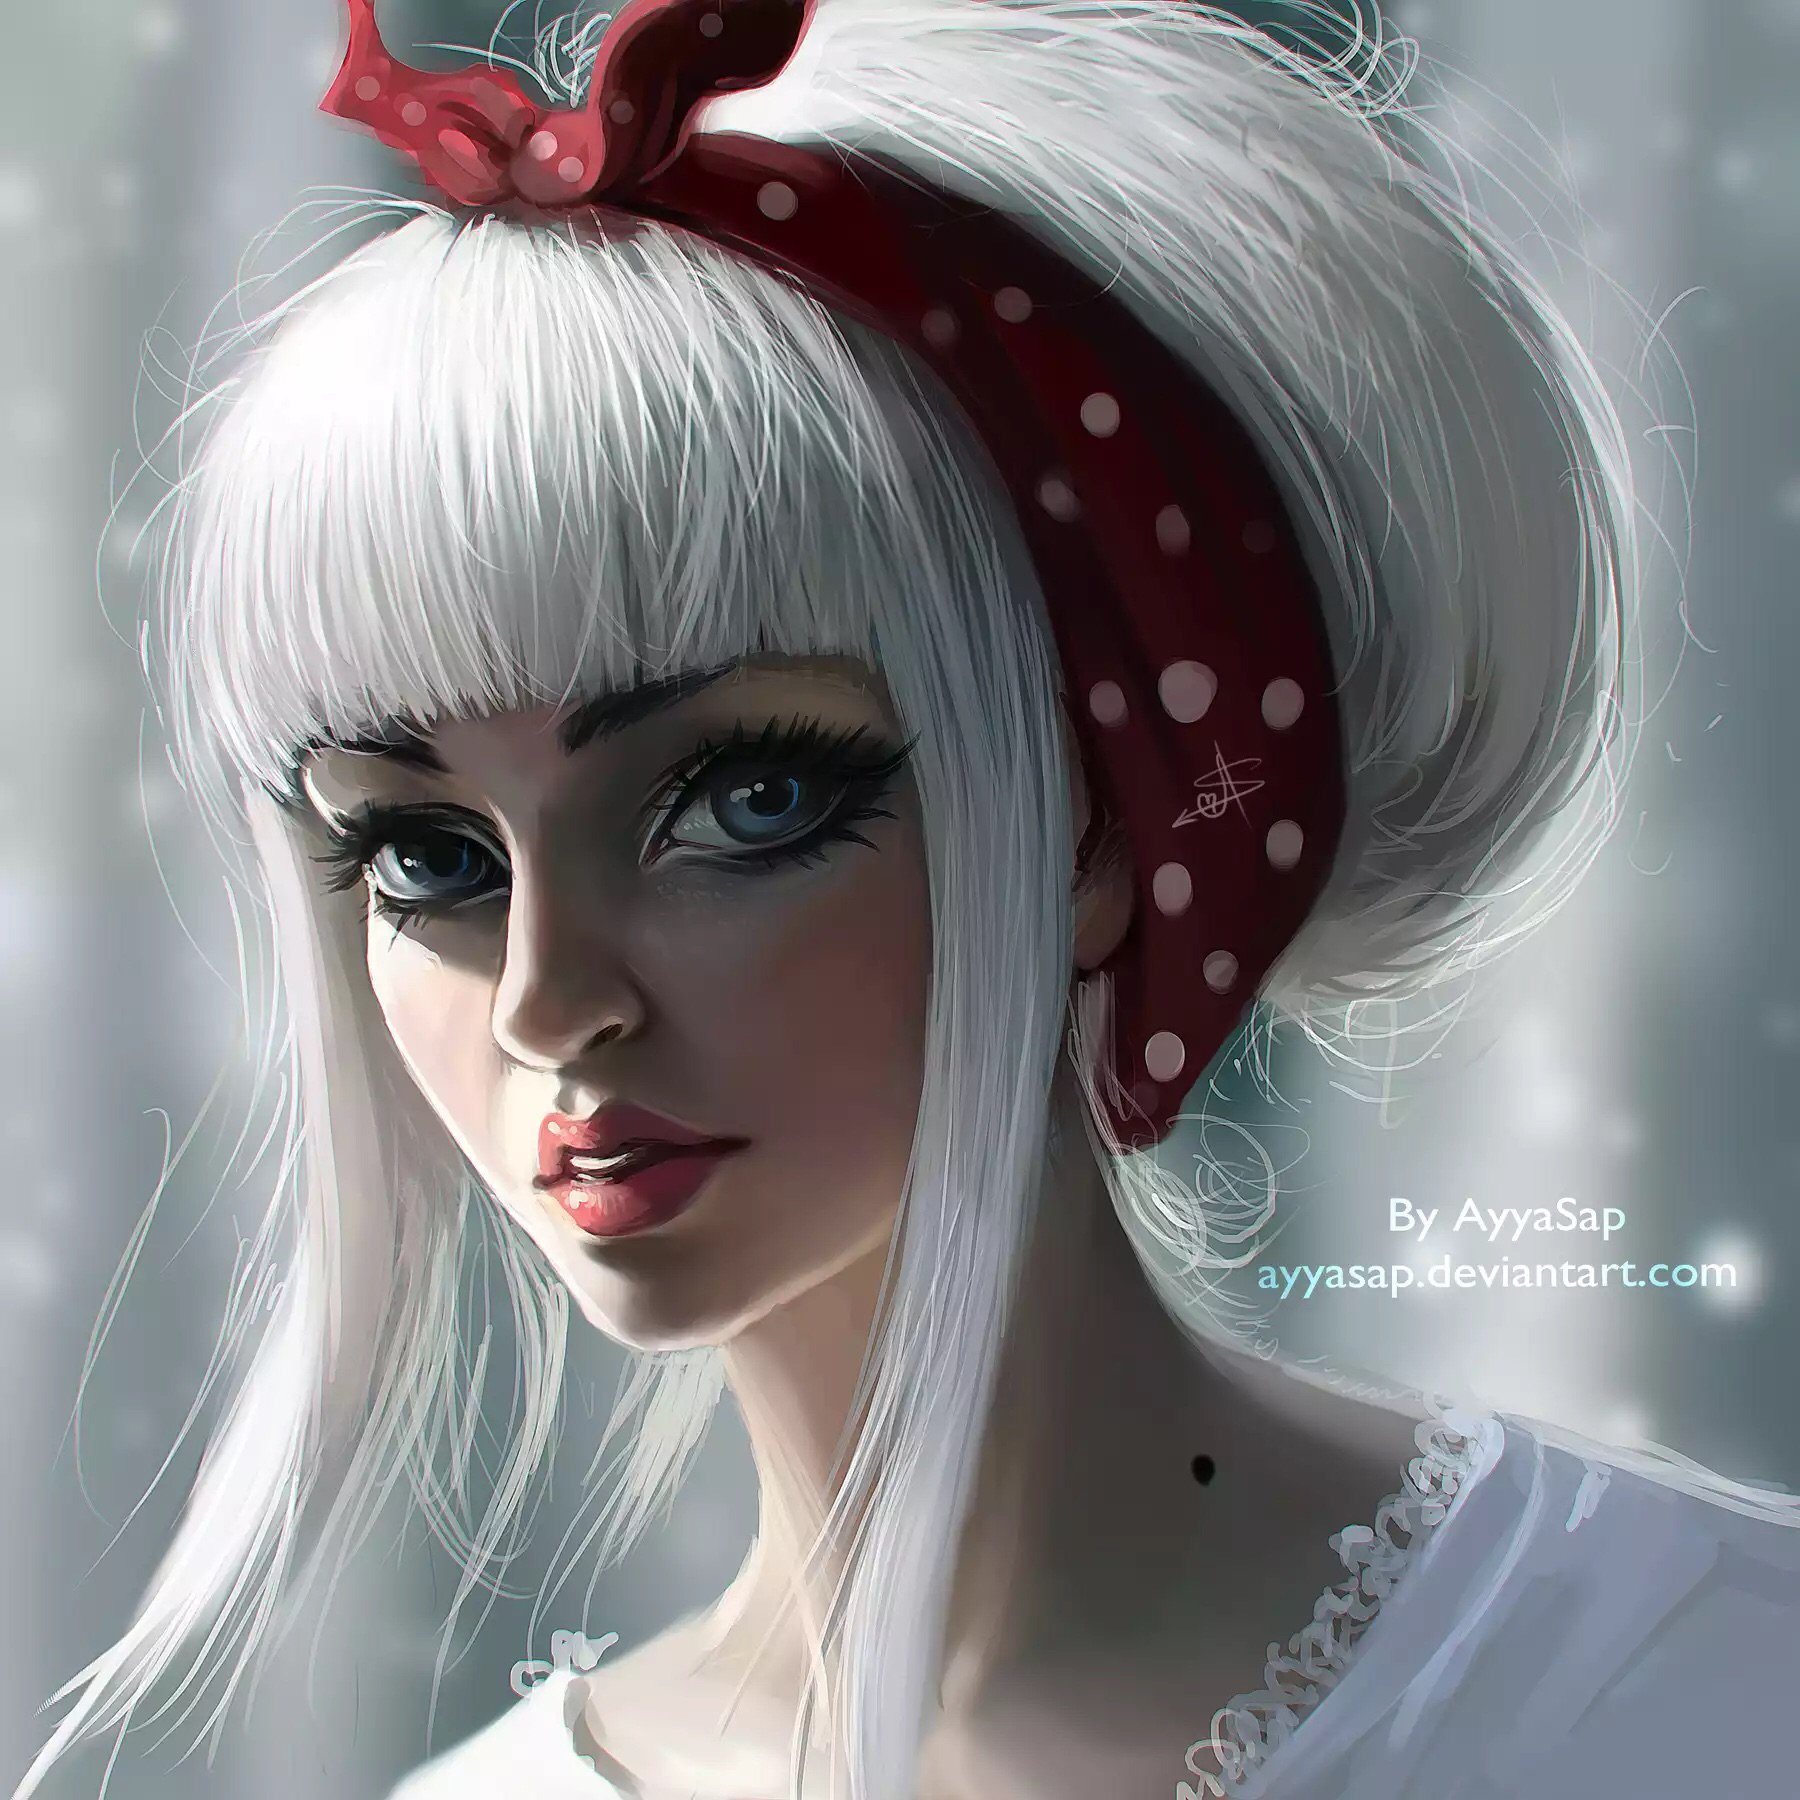 ArtStation - white hair girl character design